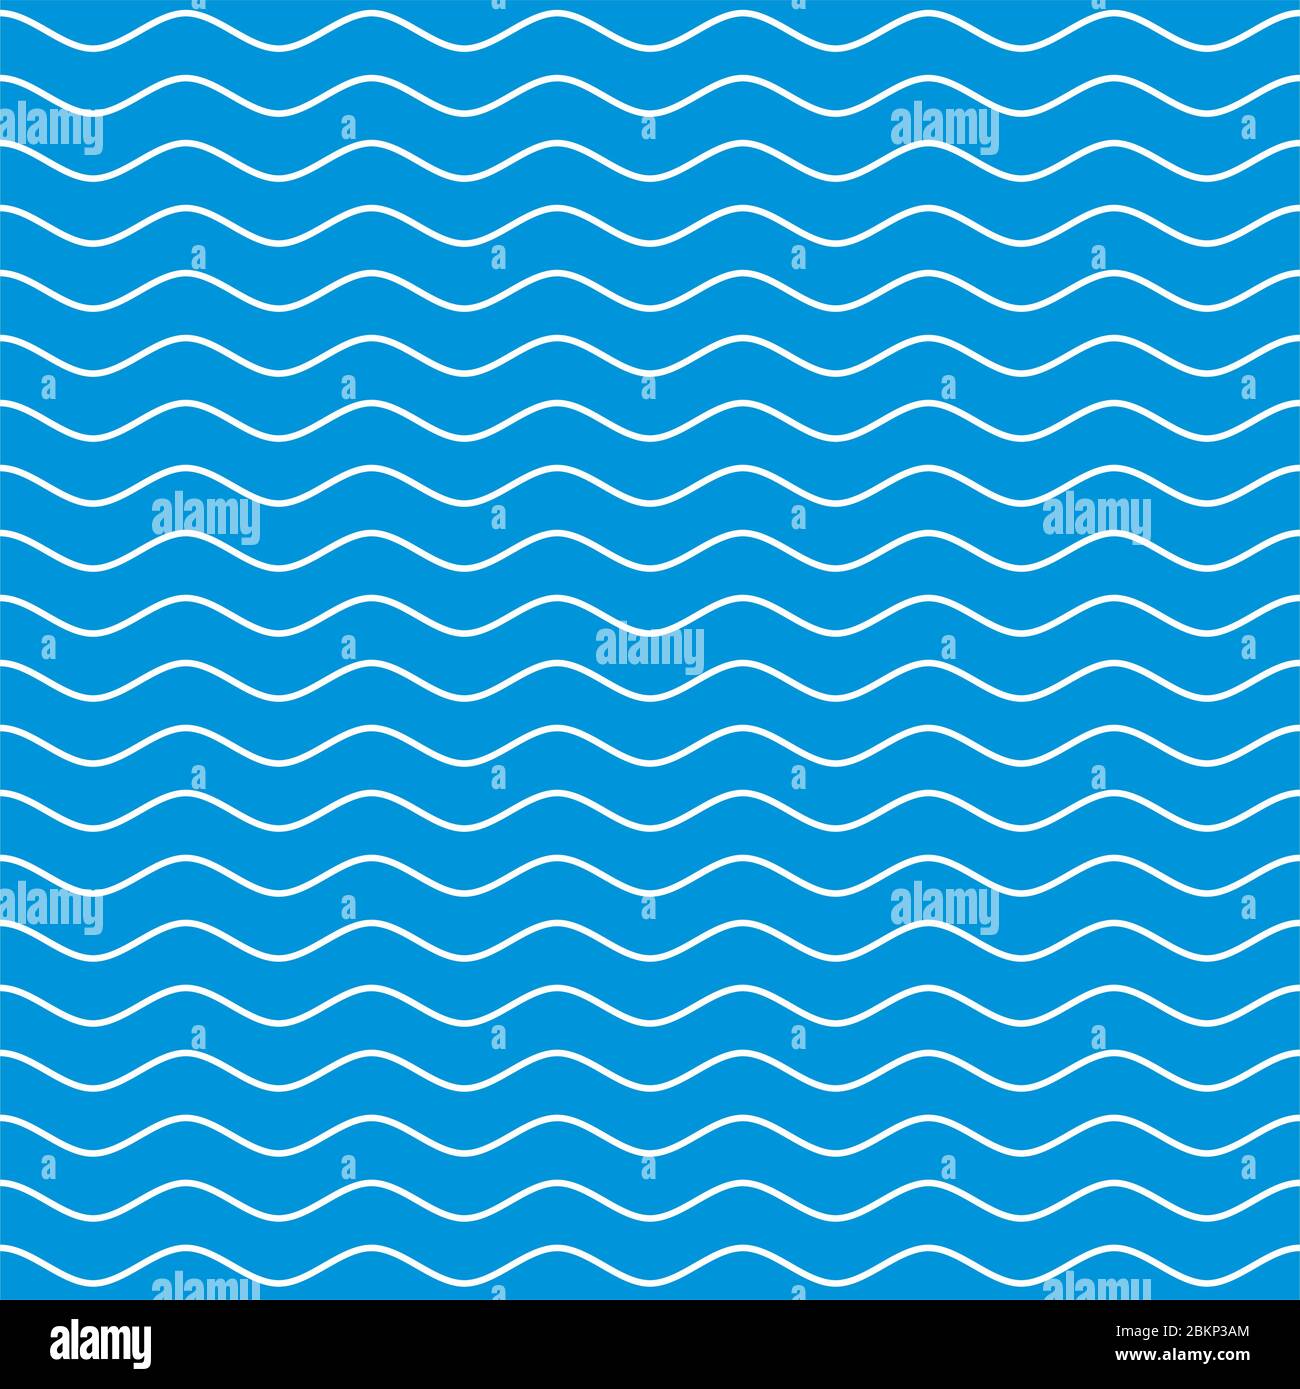 Wellenförmige Linie nahtloses Muster. Weiße Wellenlinien auf blauem Hintergrund. Welligkeit marine Textur. Vektorgrafiken für Wellenhaftigkeit. Stock Vektor